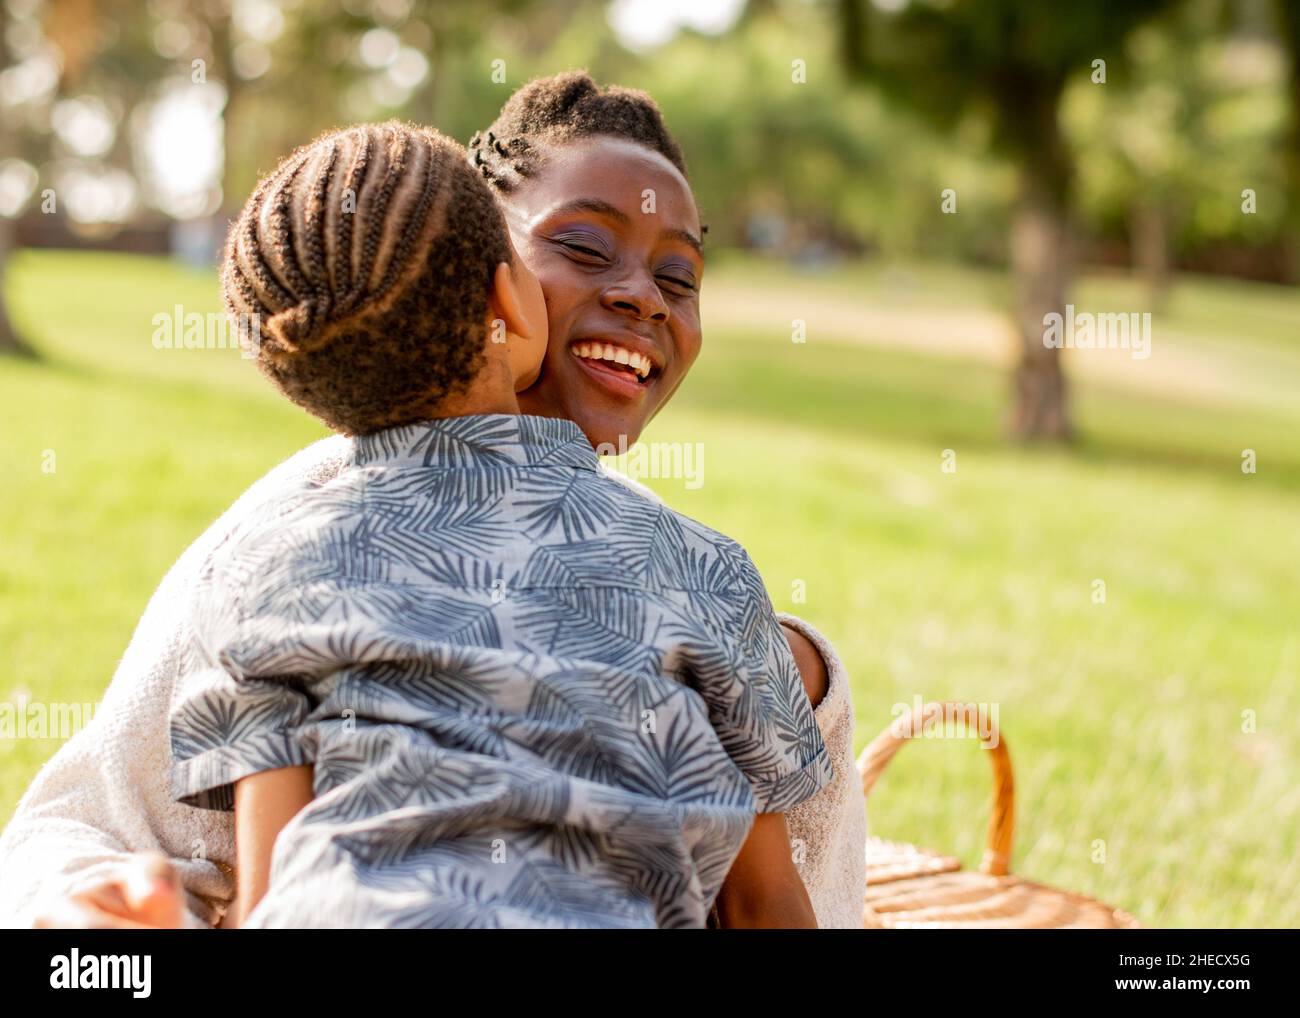 Anonyme enfant noir embrassant maman souriante pendant le pique-nique dans la nature Banque D'Images